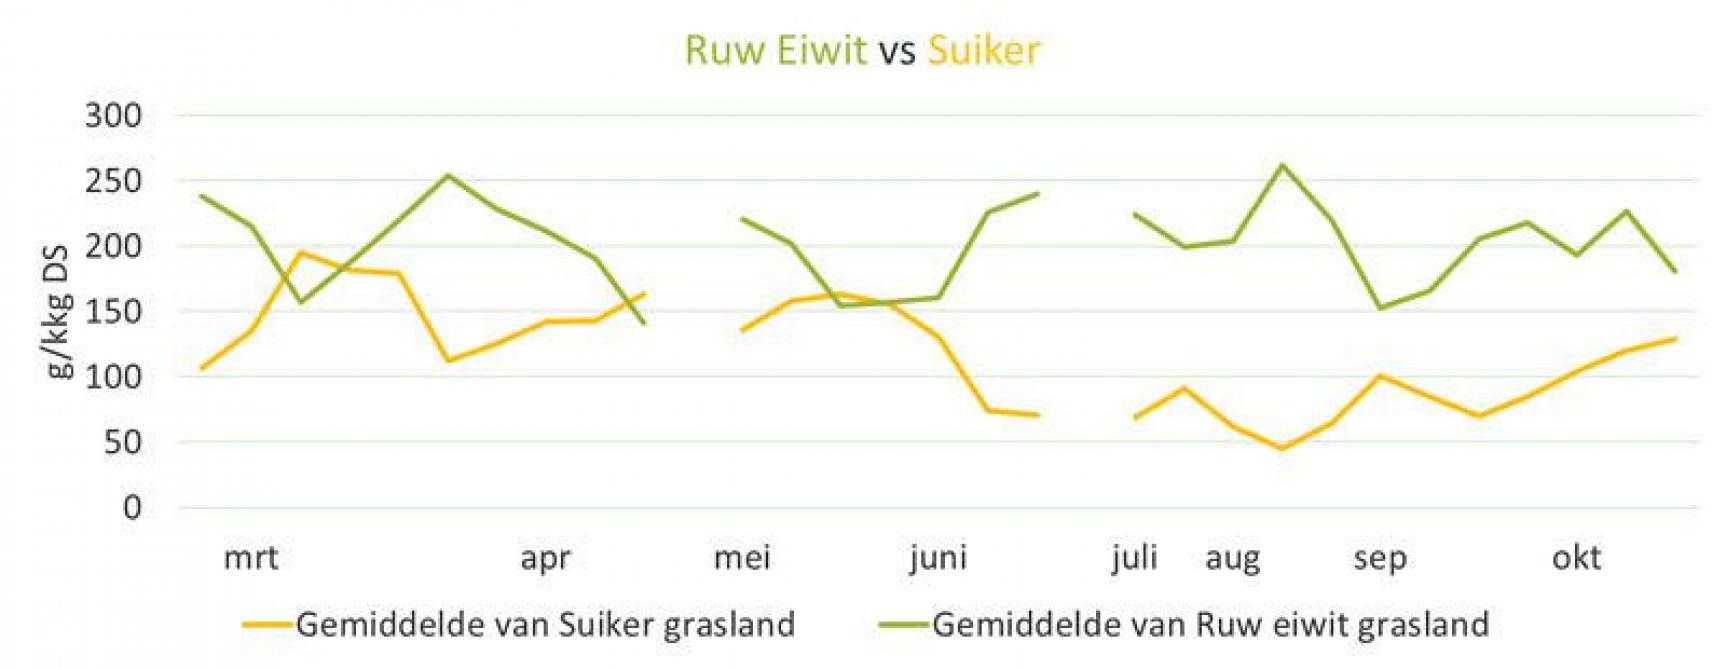 Verloop van het ruw eiwit- en suikergehalte in het gras tijdens 2020 op praktijkbedrijven West-Vlaanderen.